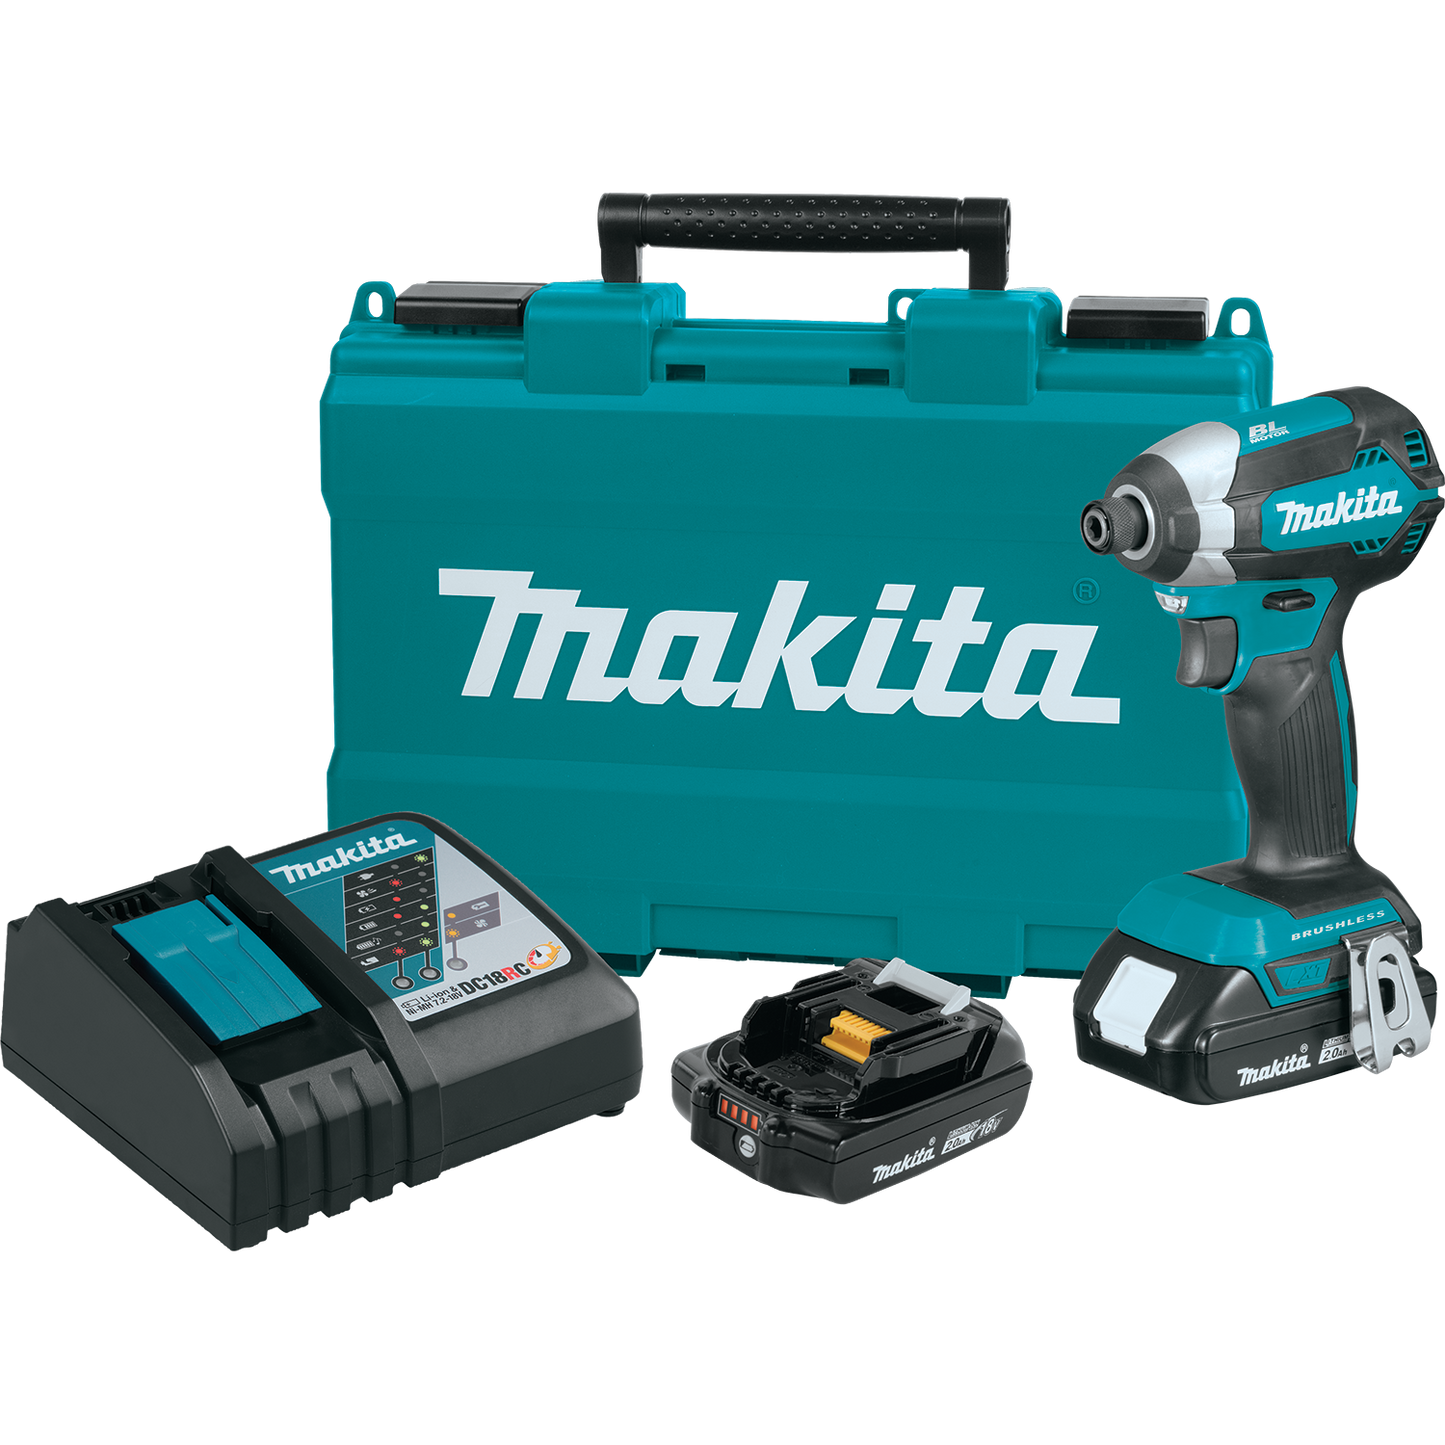 Makita 18 Volt LXT Brushless Cordless Impact Driver Kit Factory Serviced